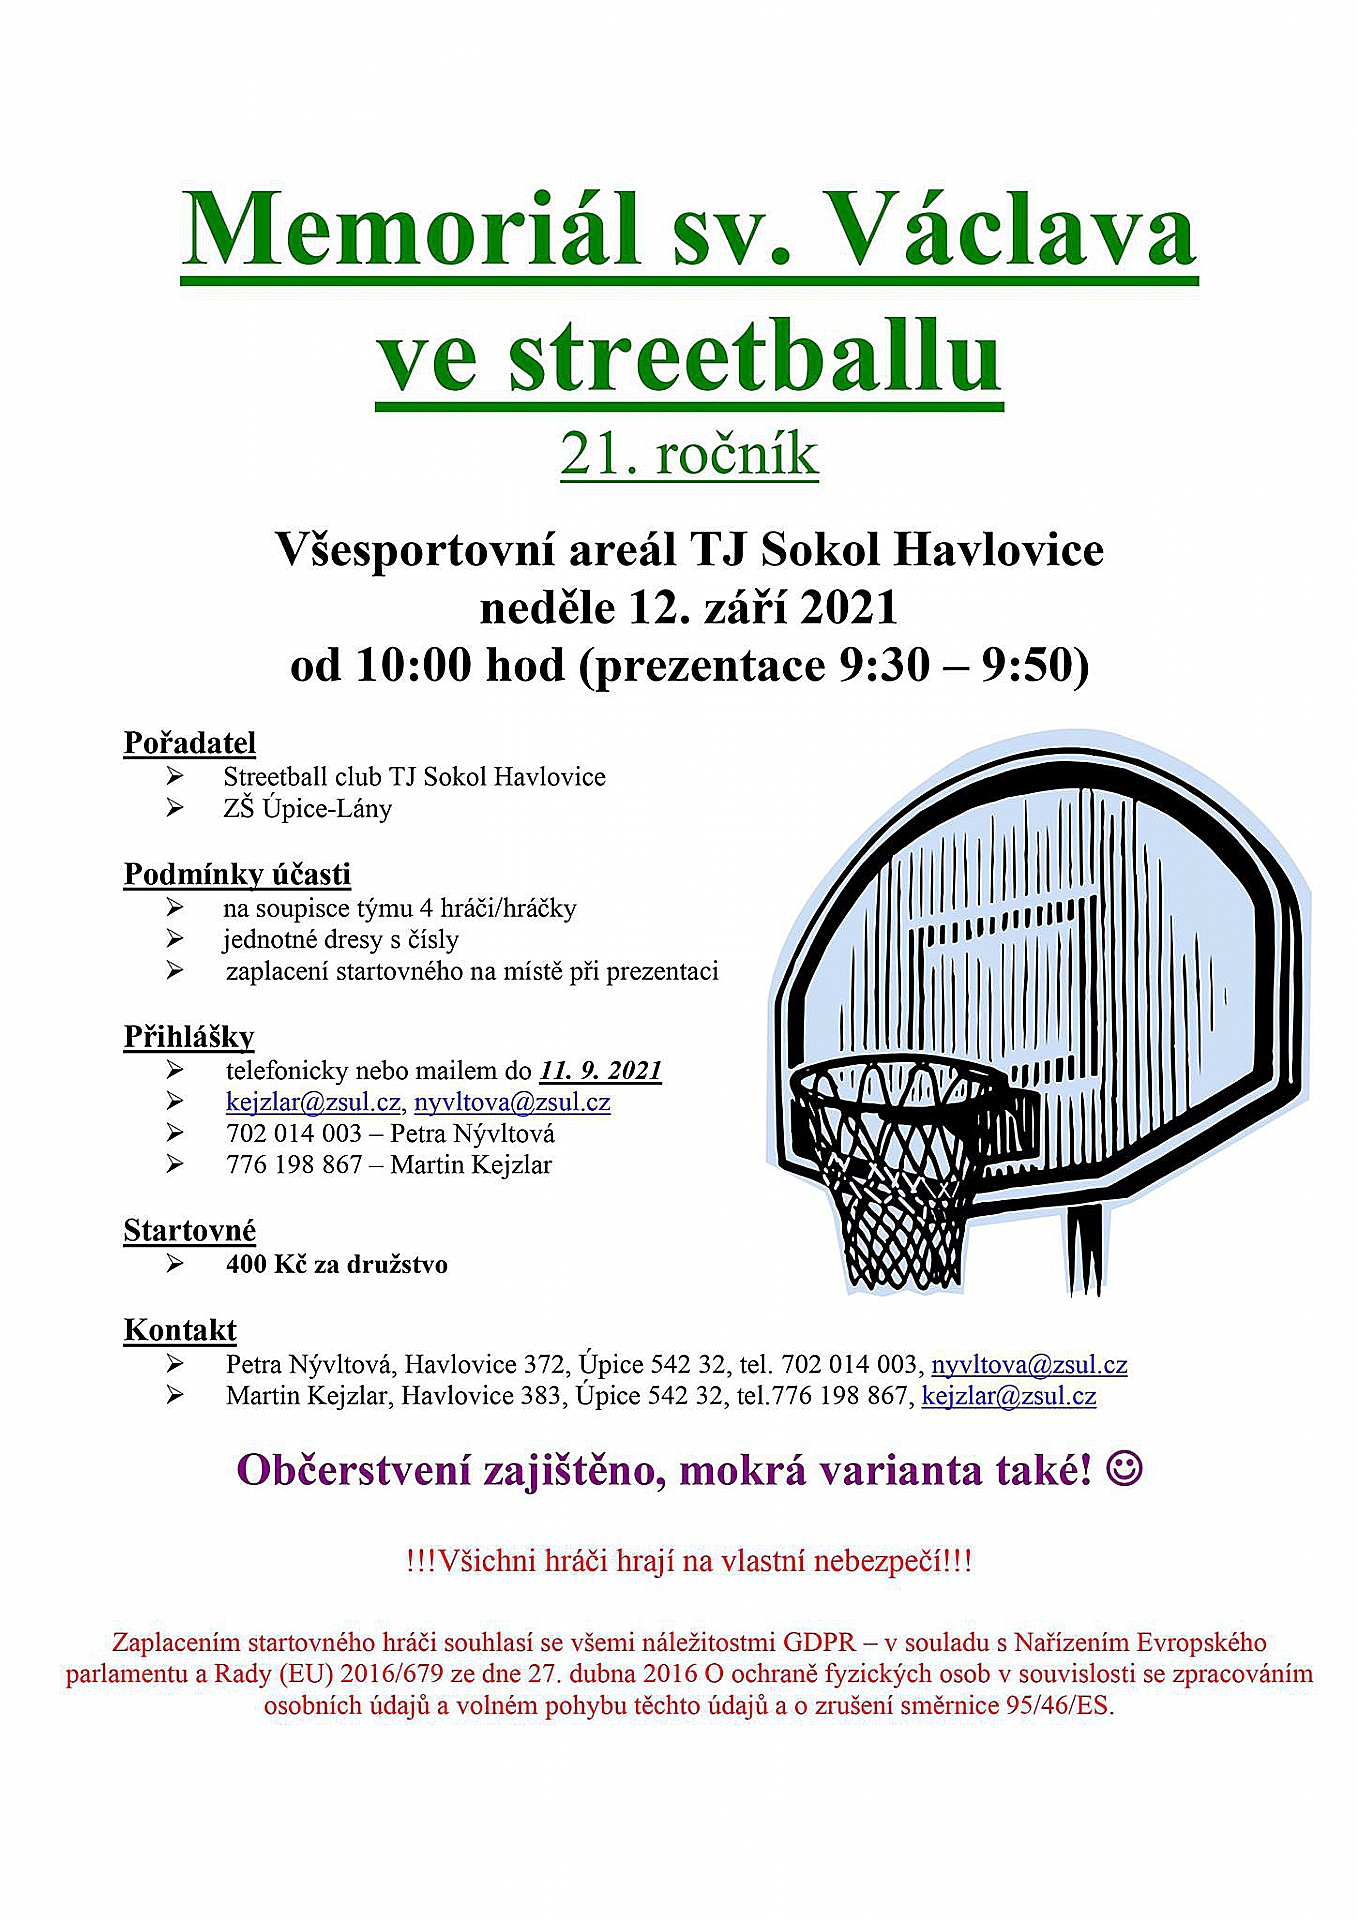 Memoriál sv. Václava ve streetballu se blíží